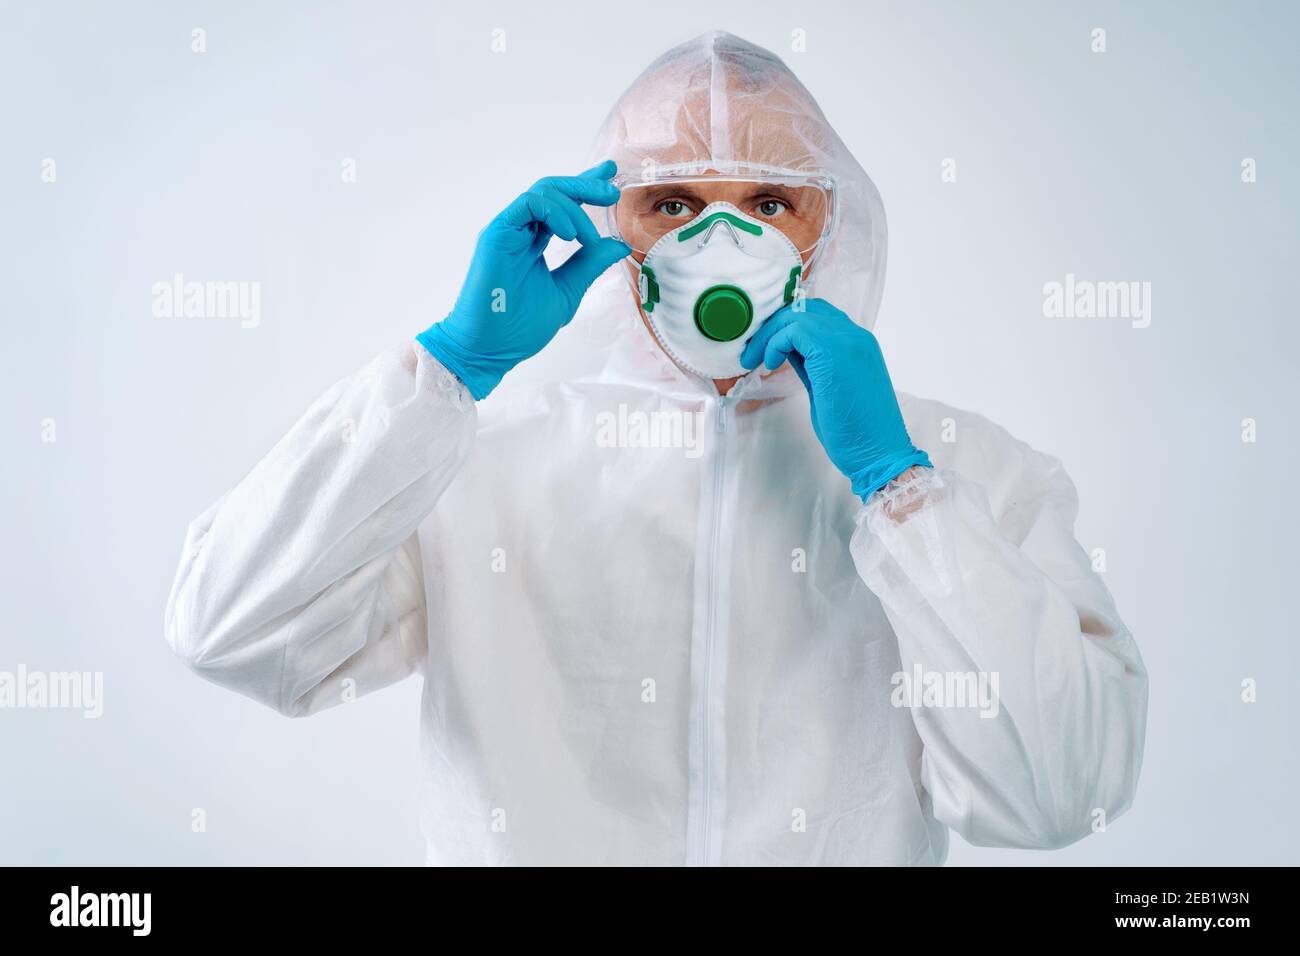 Gesundheitsarbeiter in Schutzanzug und medizinische Maske bereit zu arbeiten. Gesundheitskonzept. Stockfoto